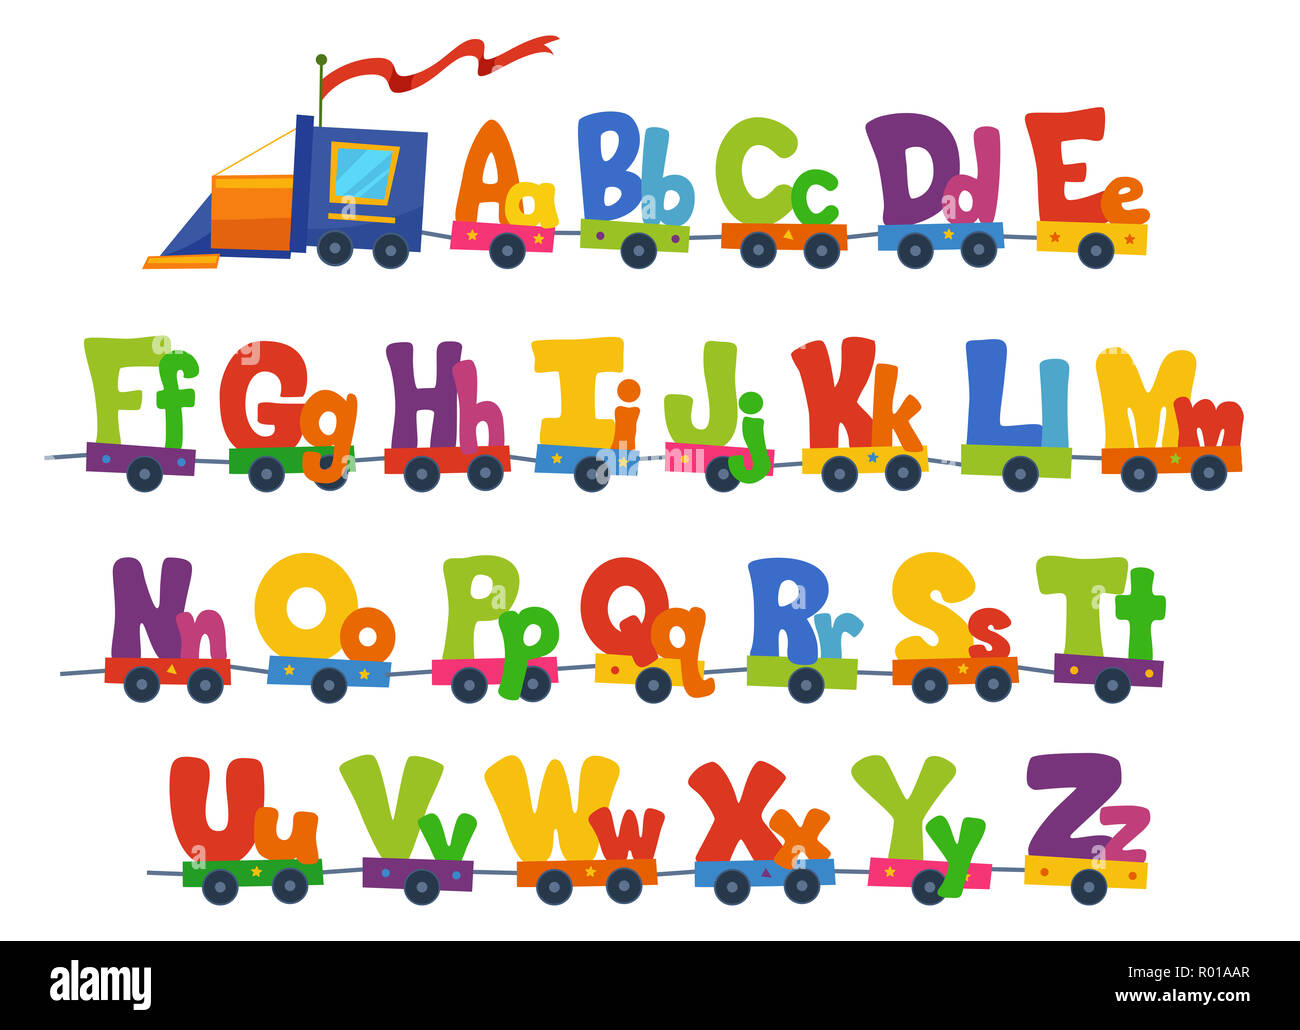 Illustrazione di un treno che porta l'alfabeto in grandi e piccole lettere Foto Stock